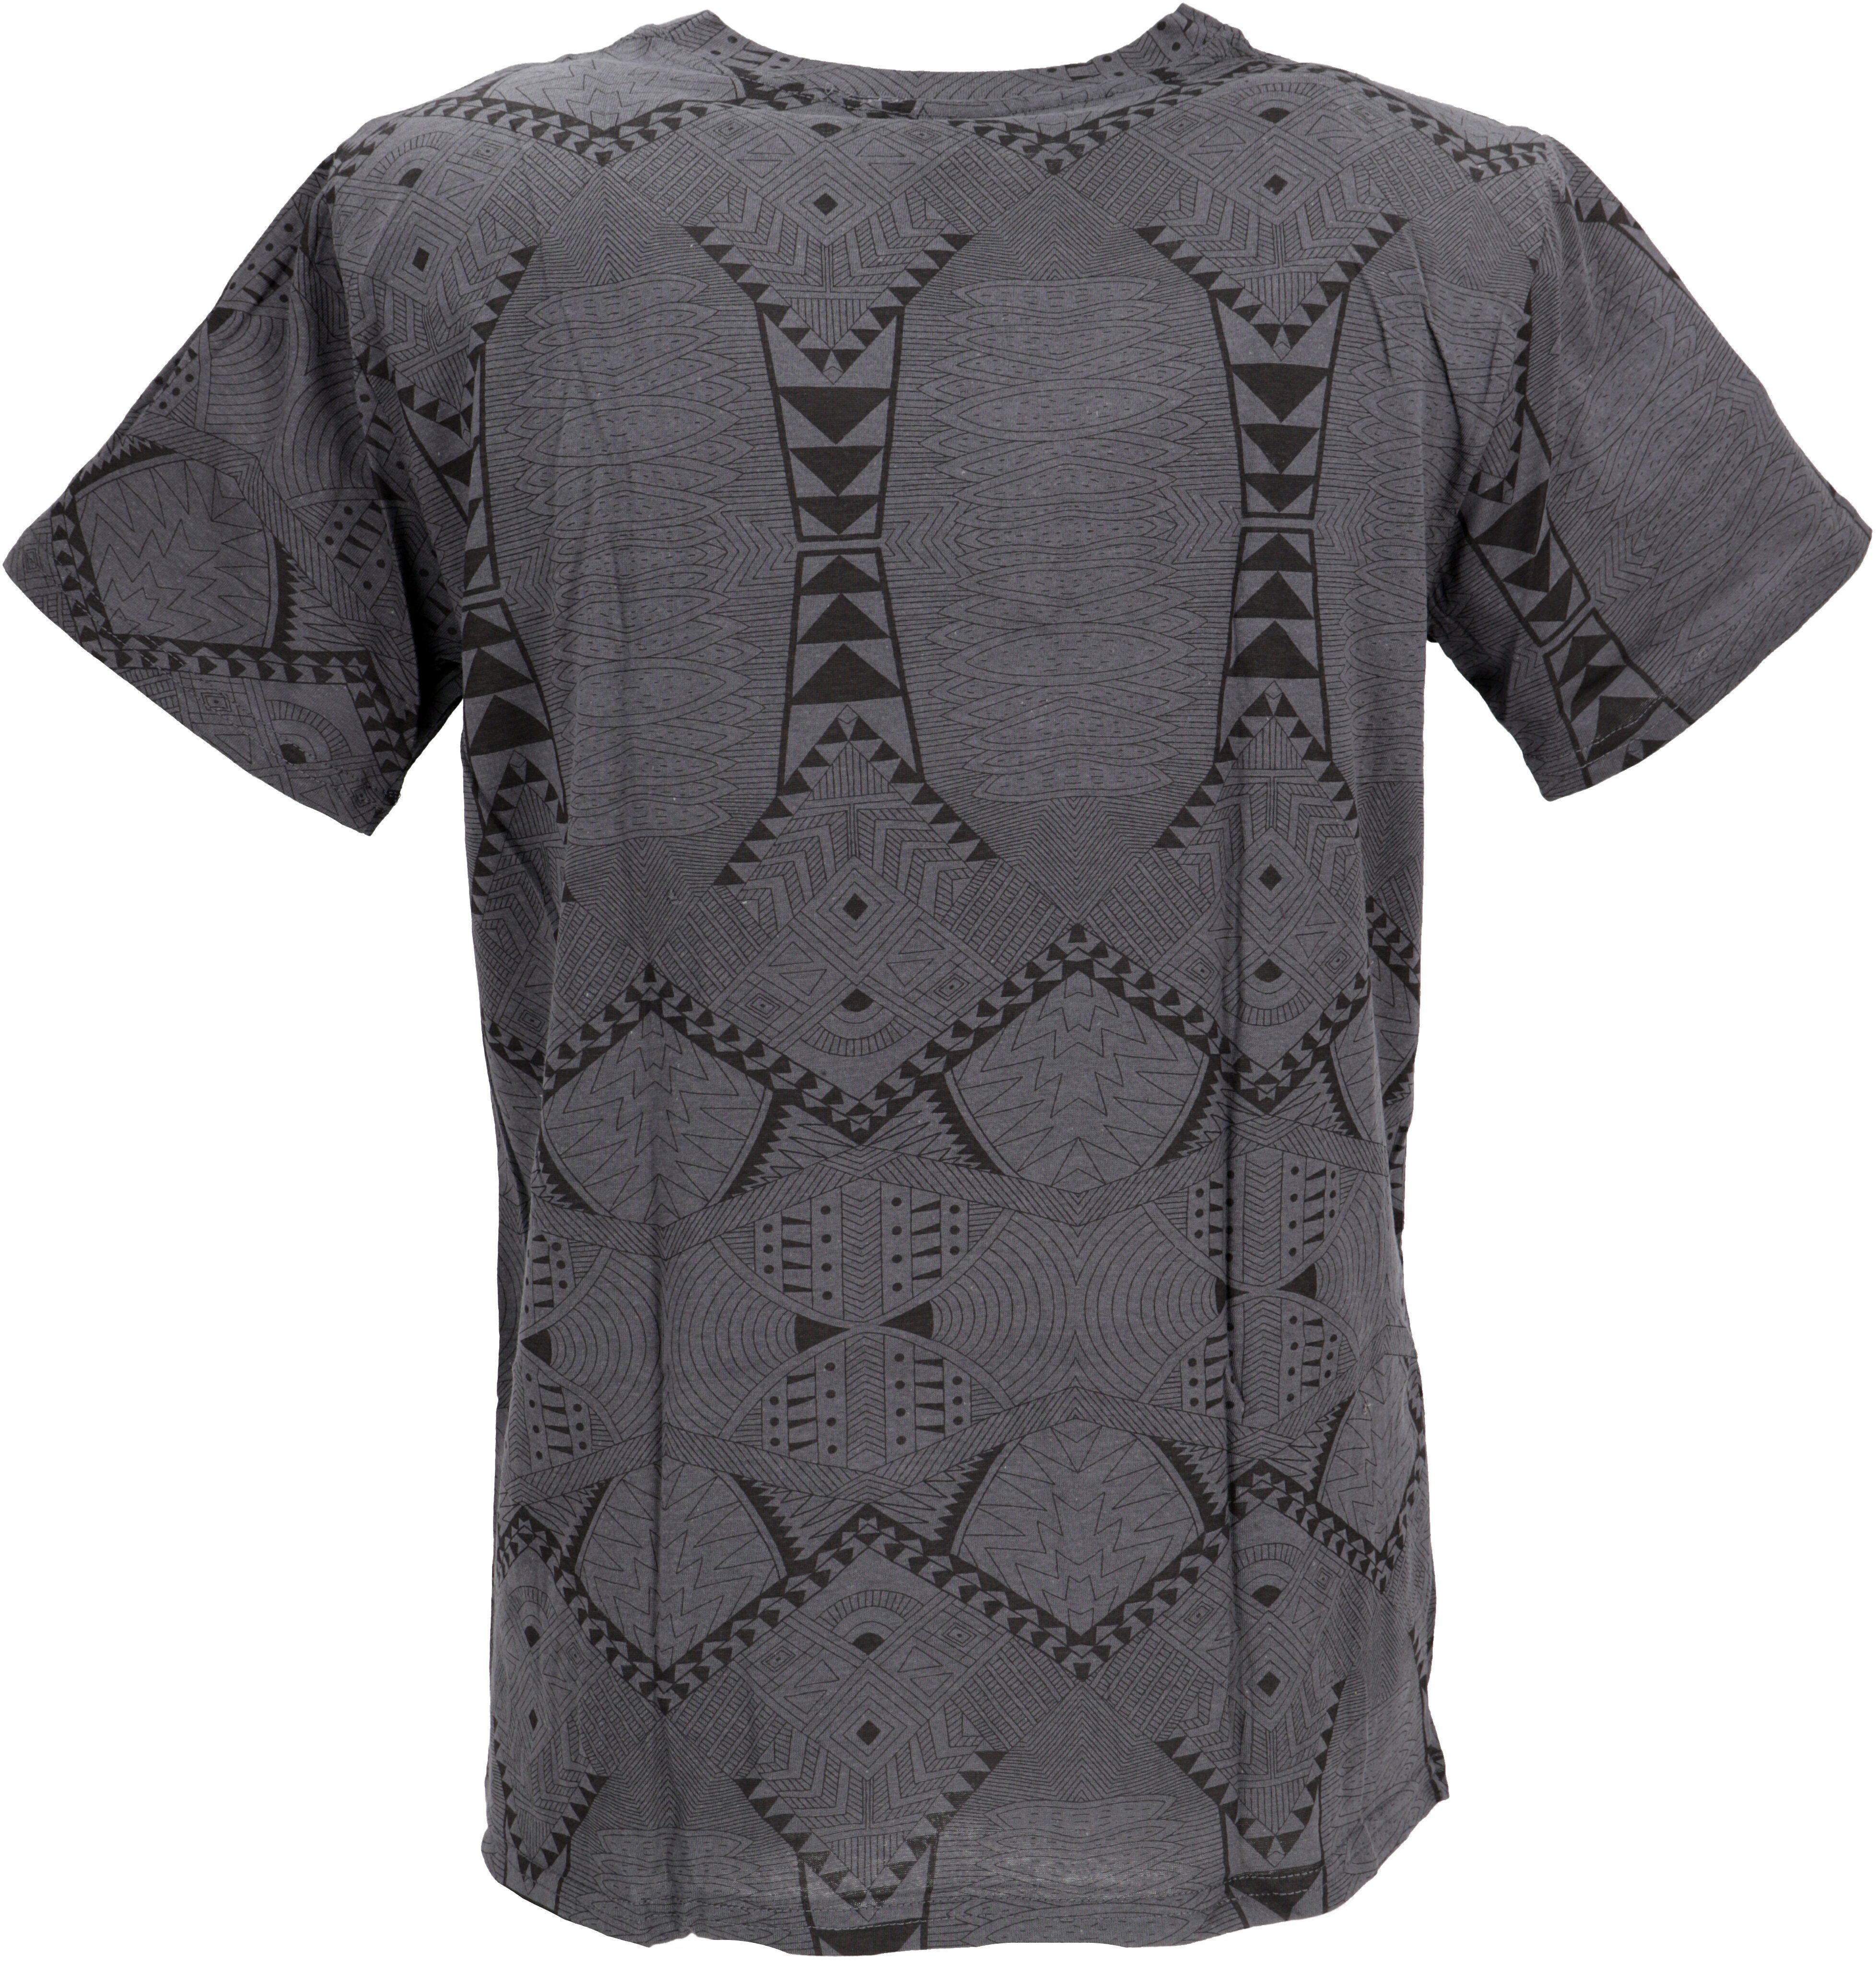 grau T-Shirt.. T-Shirt Goa Bekleidung mit alternative Guru-Shop psychodelischem Druck, T-Shirt